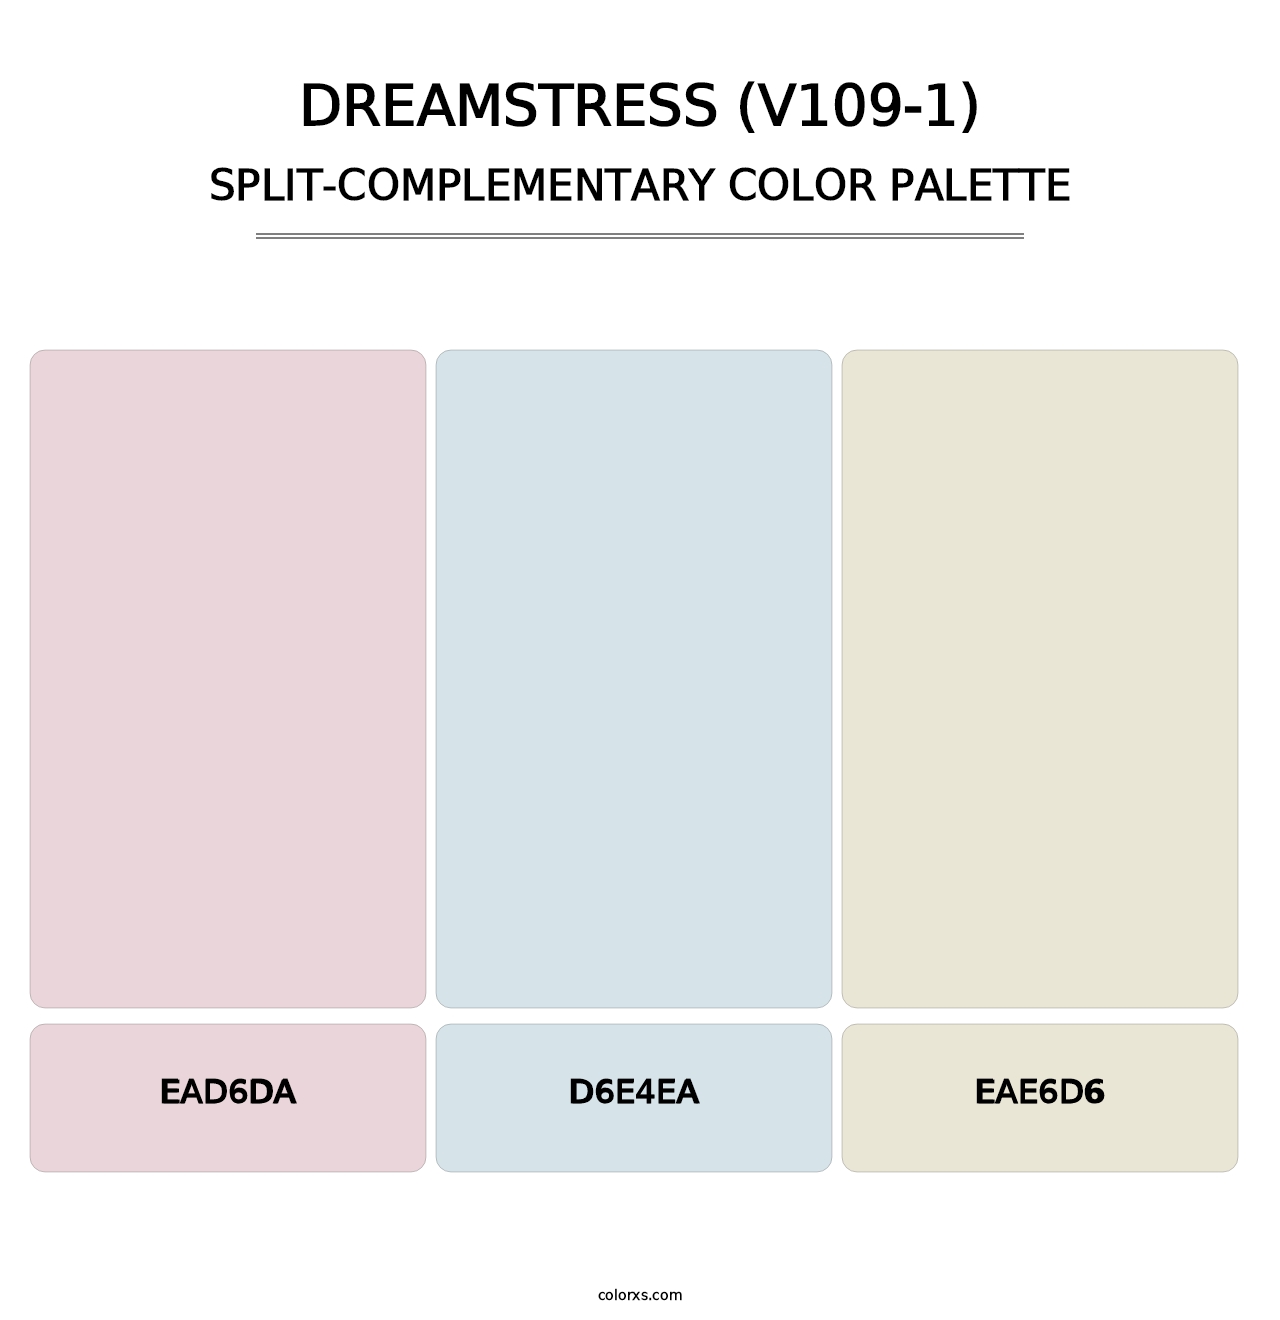 Dreamstress (V109-1) - Split-Complementary Color Palette